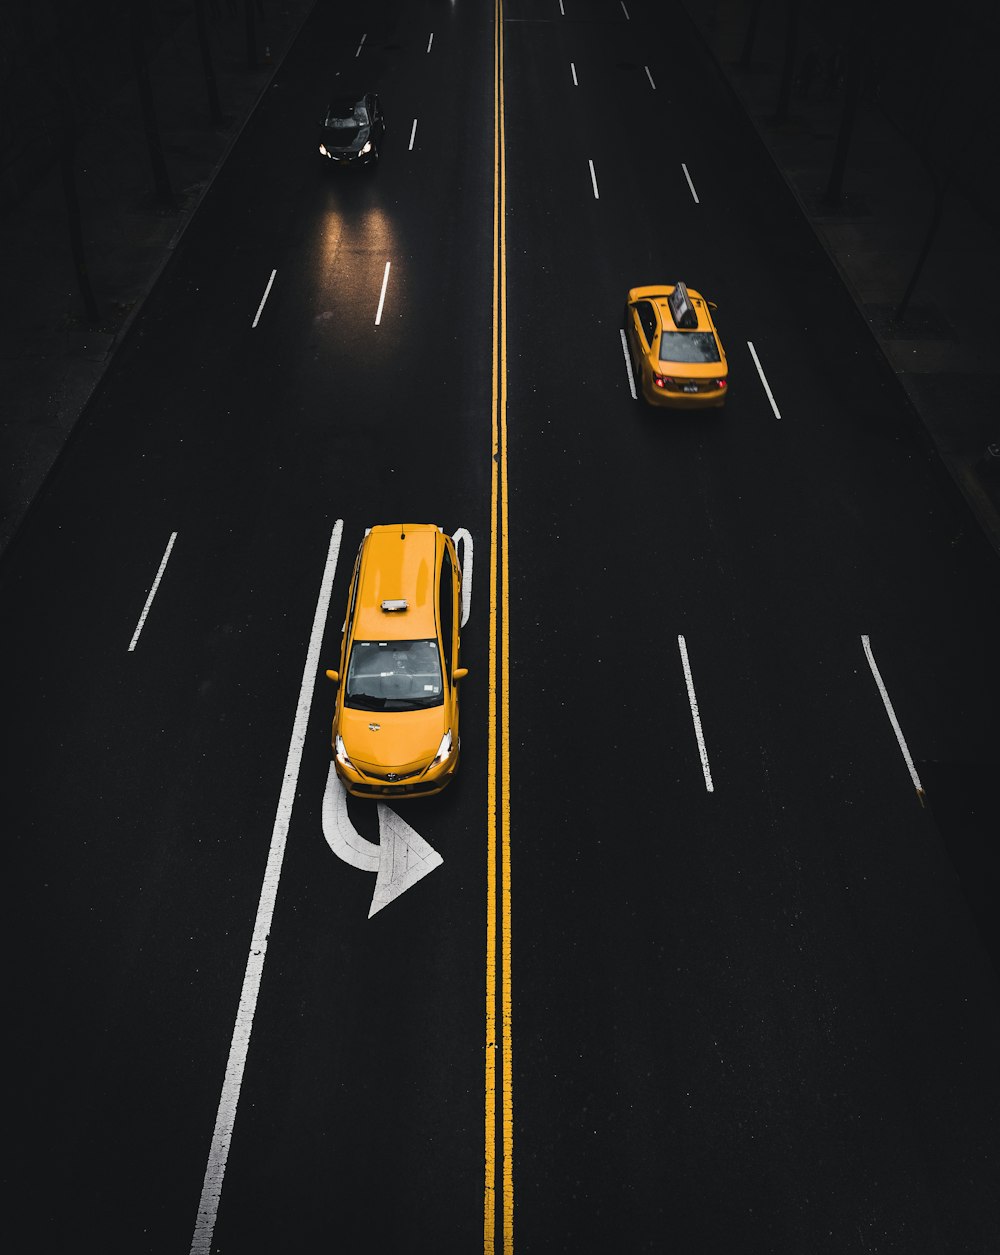 gelber SUV auf der Straße mit Linksabbiegeschild